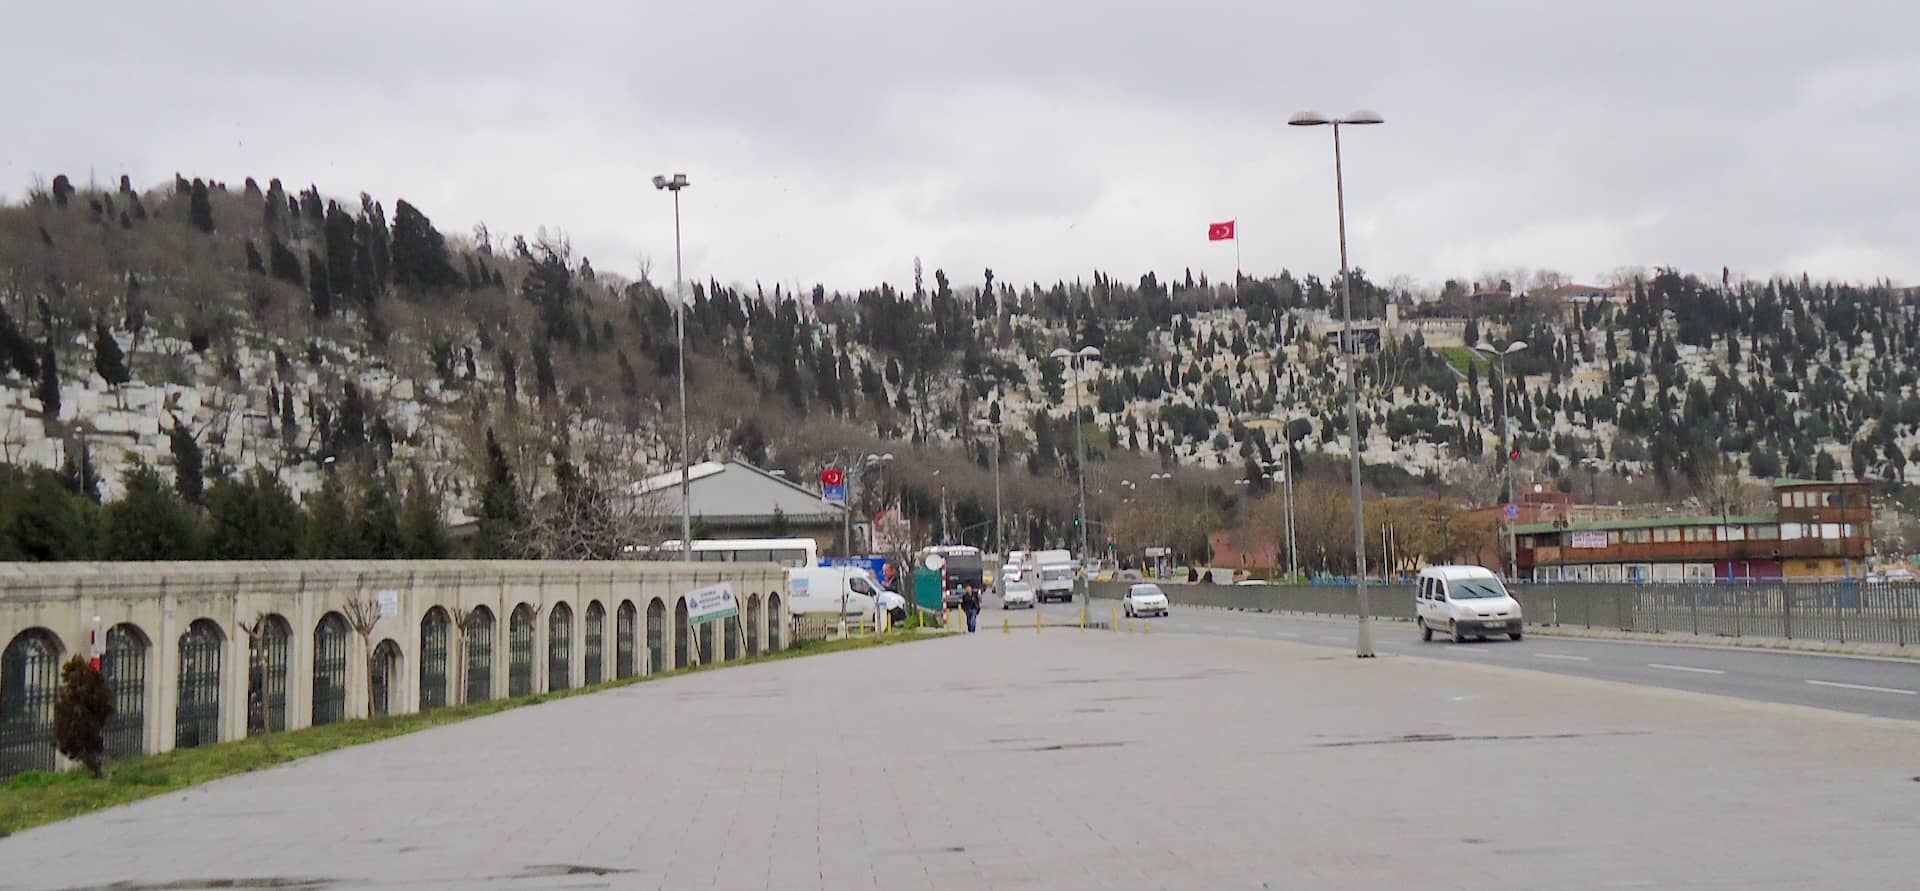 Pierre Loti Hill in Eyüp, Istanbul, Turkey